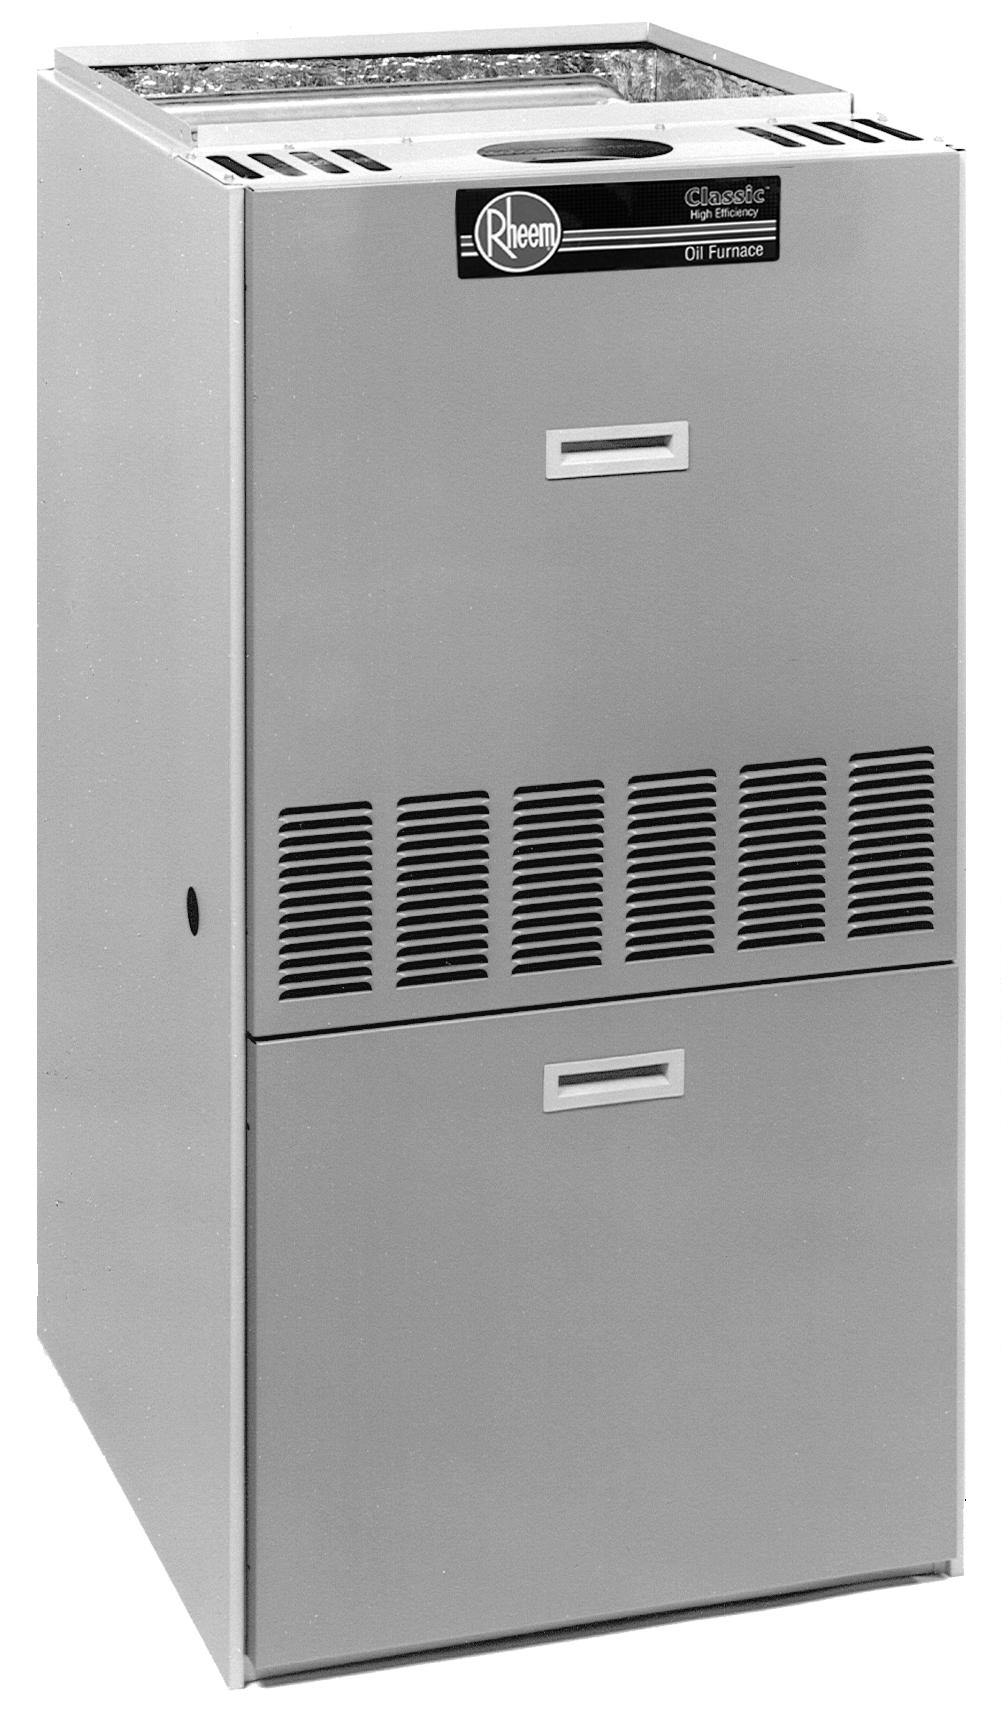 FORM NO. O11-612 REV. 2 Supersedes Form No. O11-612 Rev. 1 OIL FURNACES ROBF- SERIES Heating Capacities 56,000 to 151,200 BTU/HR [16.41 to 44.